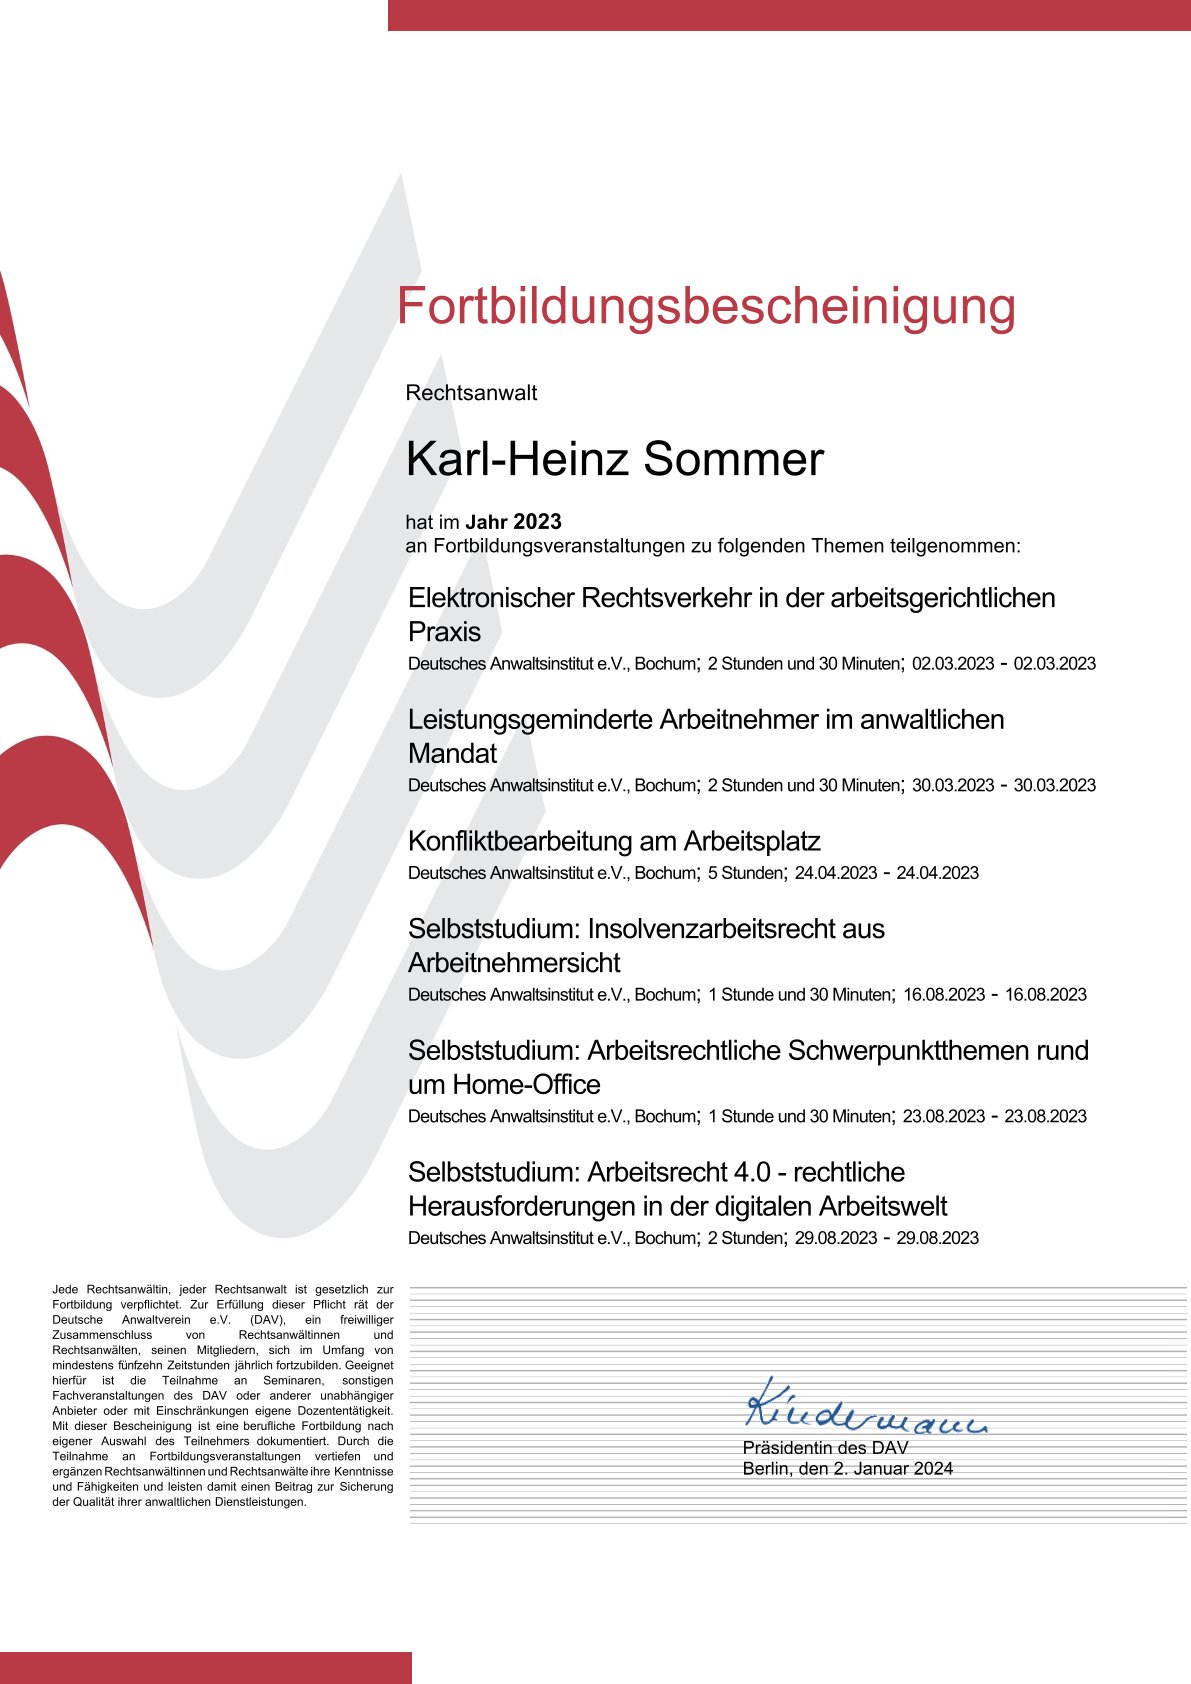 2022Fortbildungsbescheinigung_Karl-Heinz-Sommer-DAV.jpg